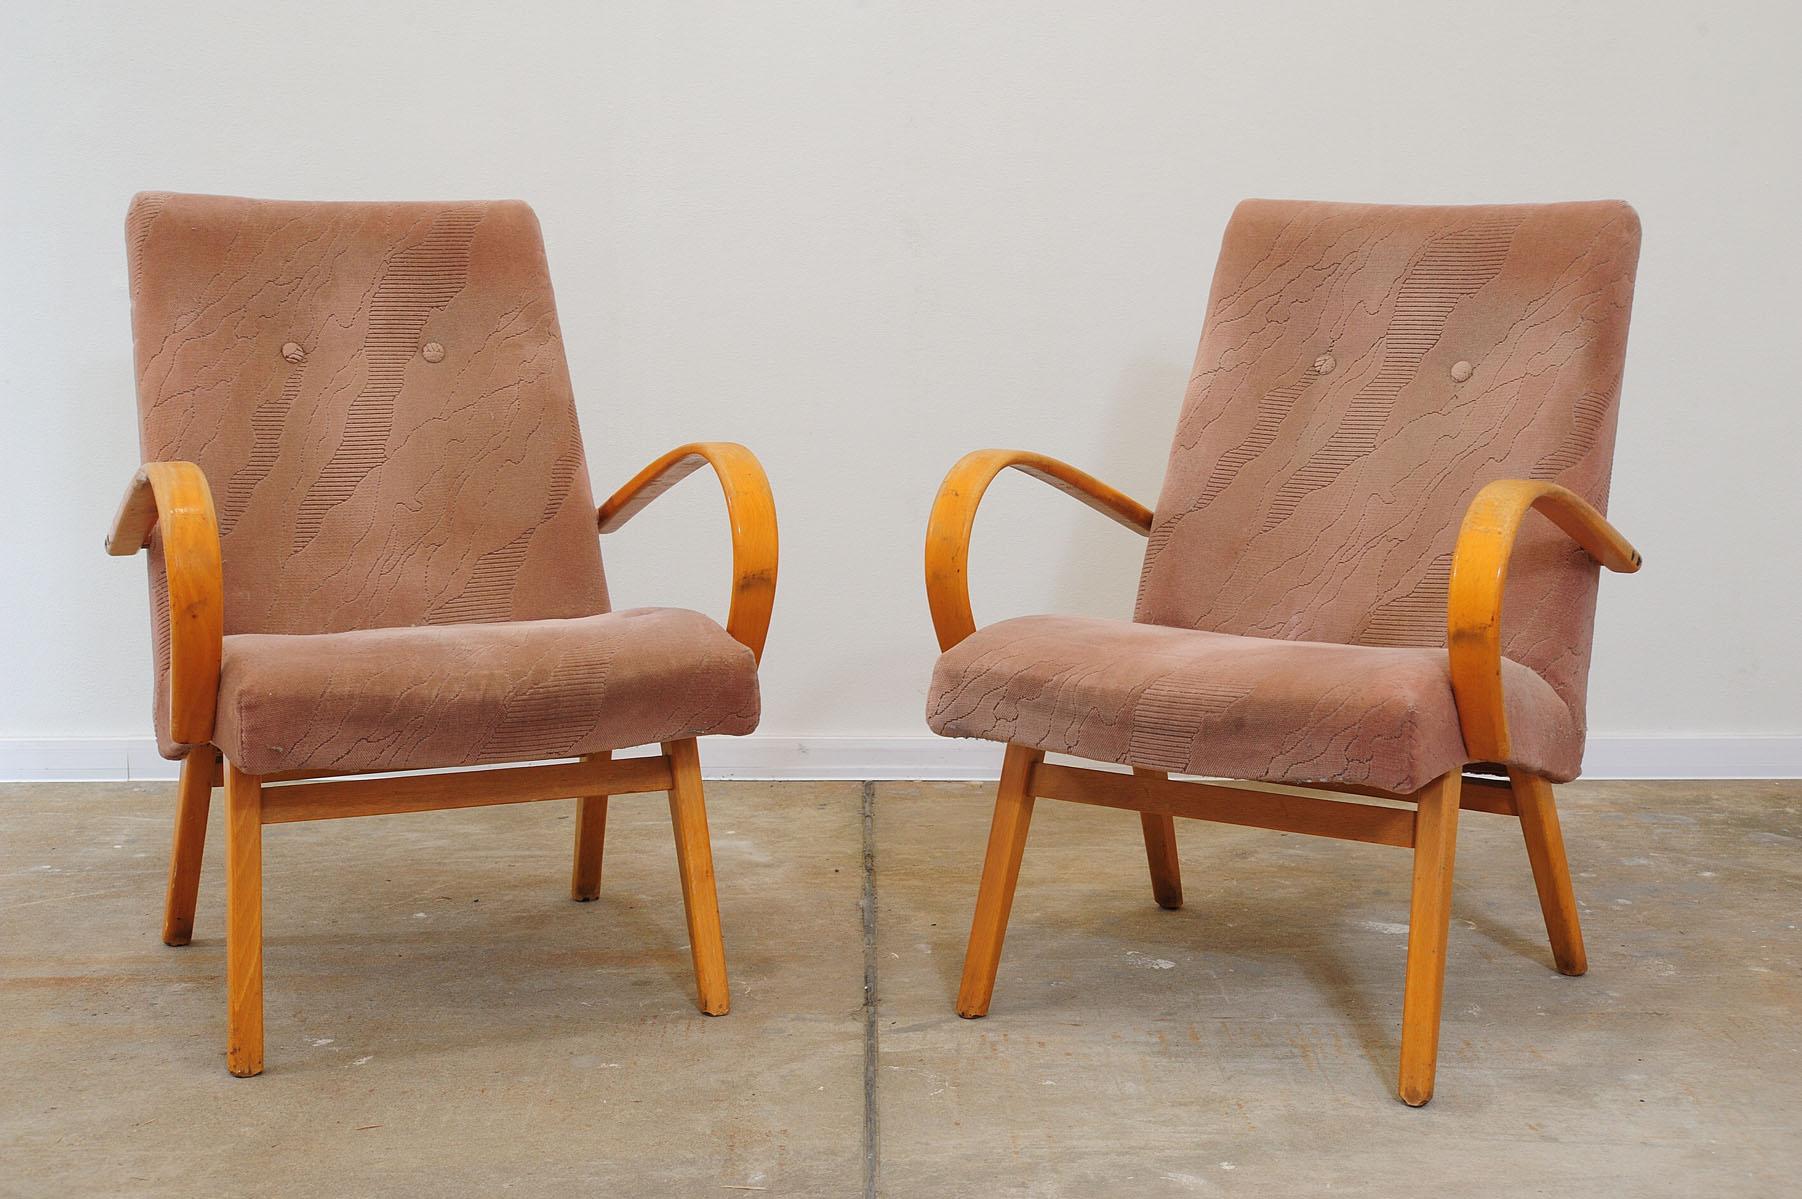 Ces fauteuils en bois courbé ont été conçus par Jaroslav Šmídek et fabriqués dans l'ancienne Tchécoslovaquie dans les années 1960.

Fabriqué en bois de hêtre et en tissu d'ameublement.

Les fauteuils sont solides et confortables. Il présente les